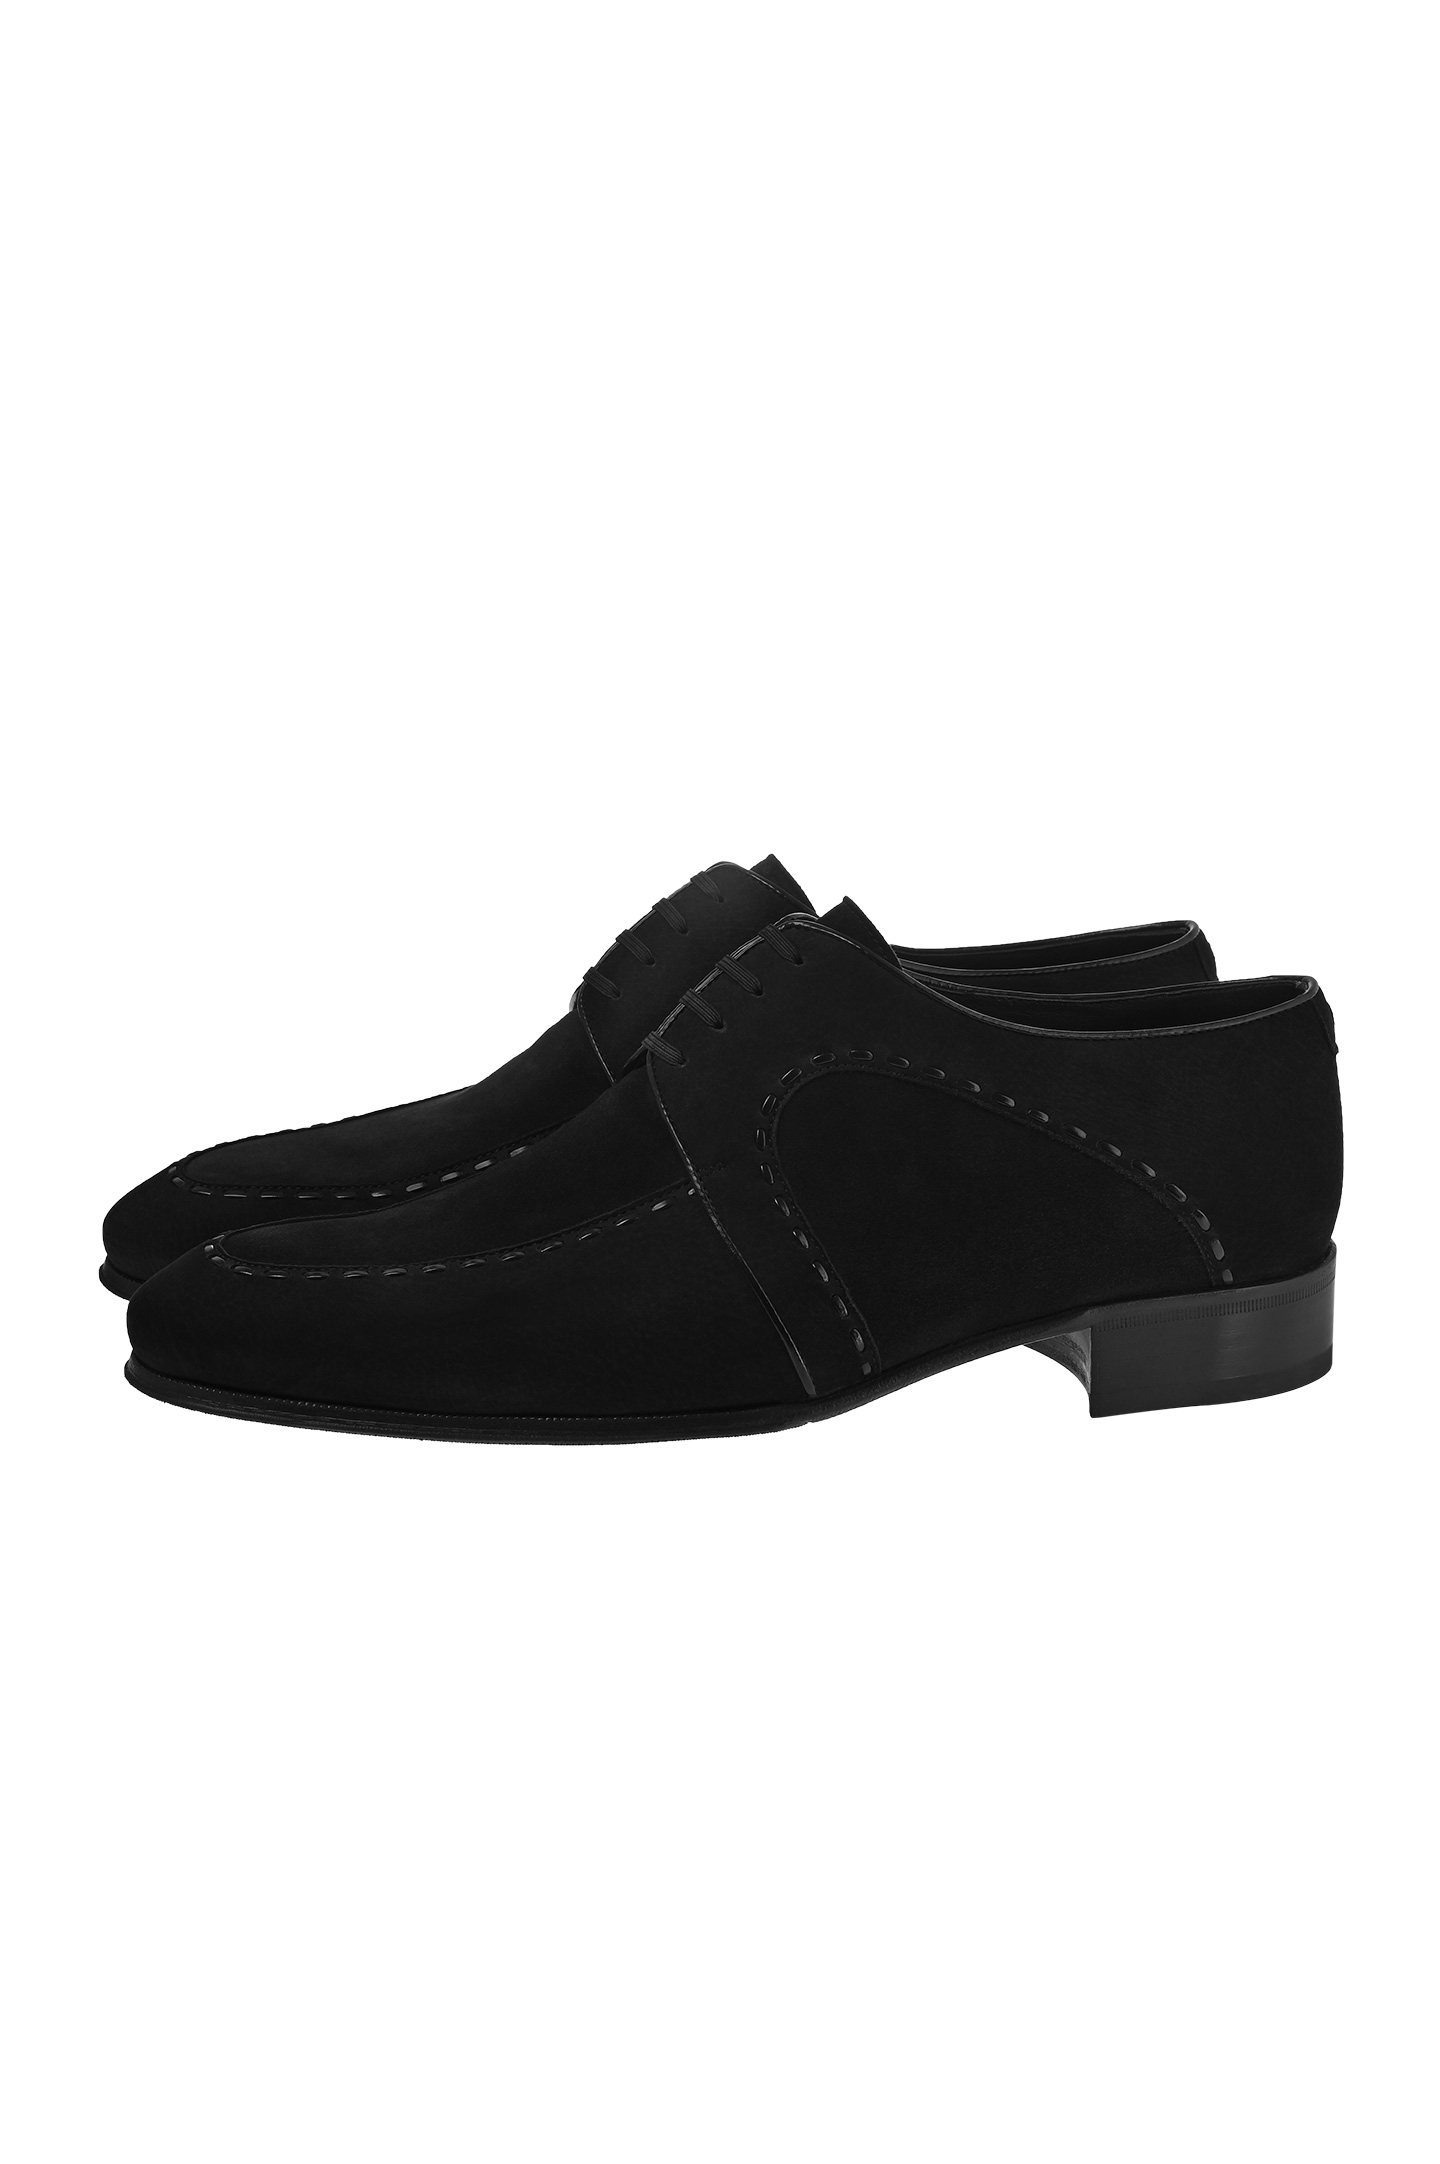 Туфли ARTIOLI 06S421, цвет: Черный, Мужской